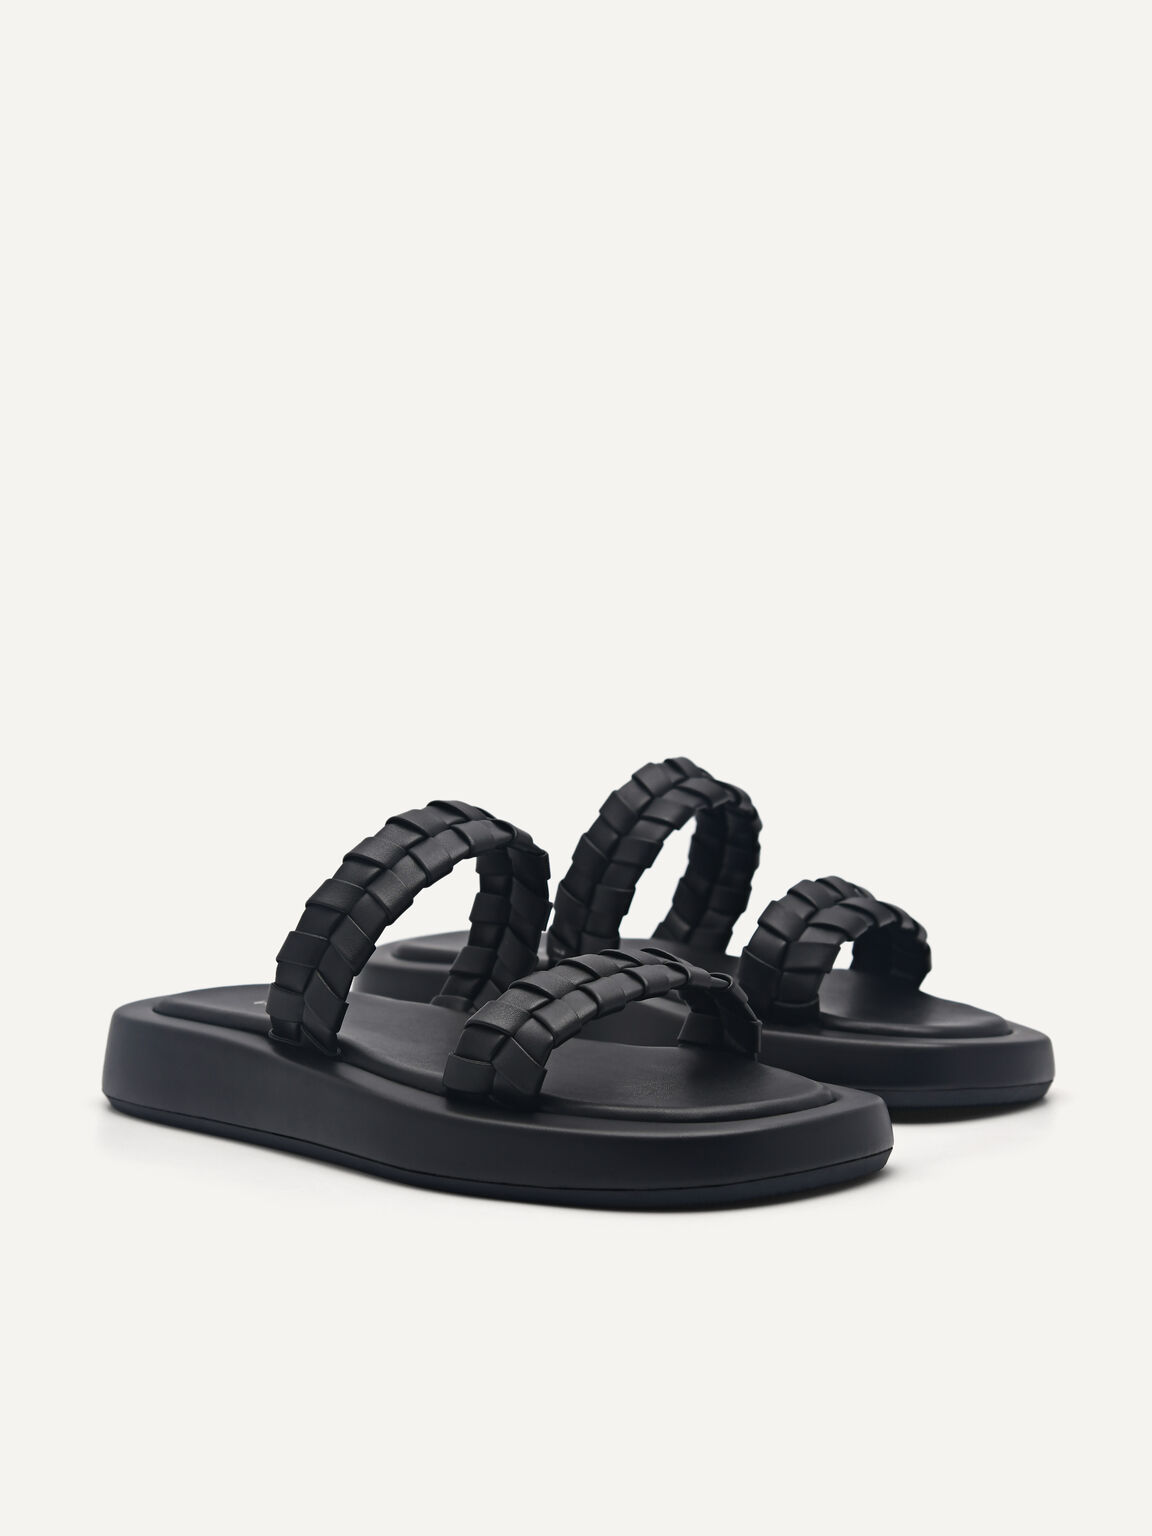 Palma Woven Sandals, Black, hi-res